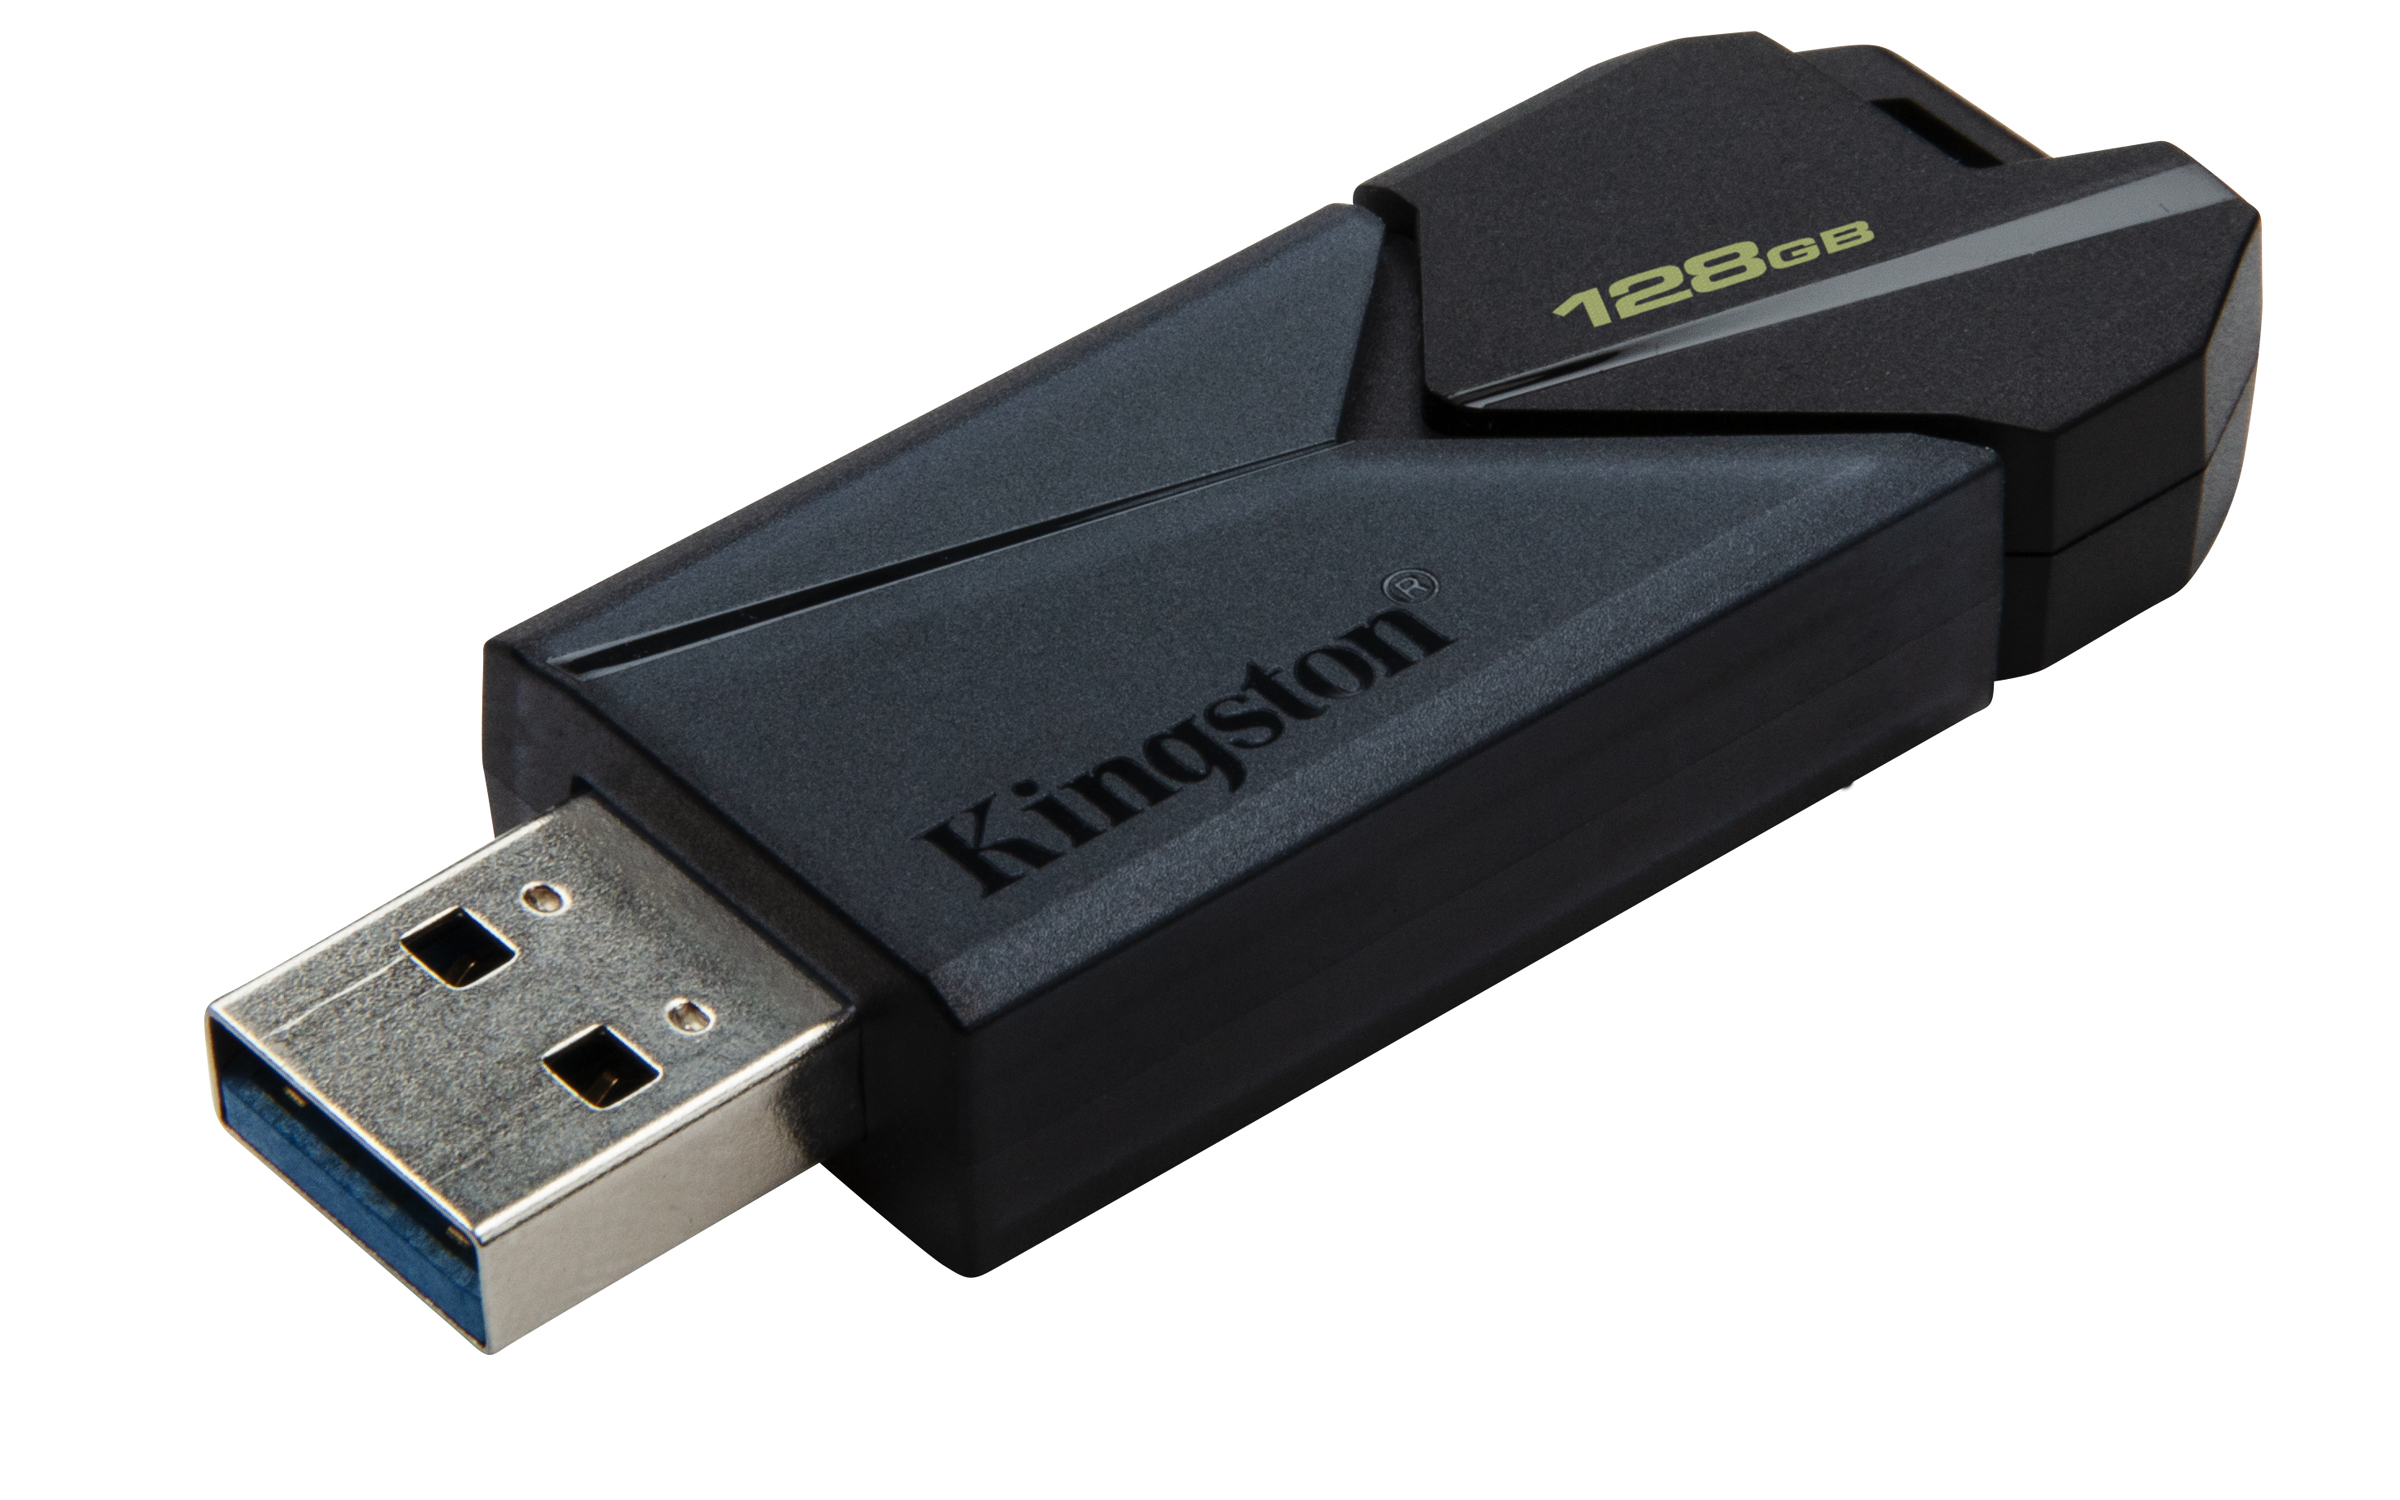 PEN DRIVE KINGSTON DTXON/128GB EXODIA ONYX USB 3.2